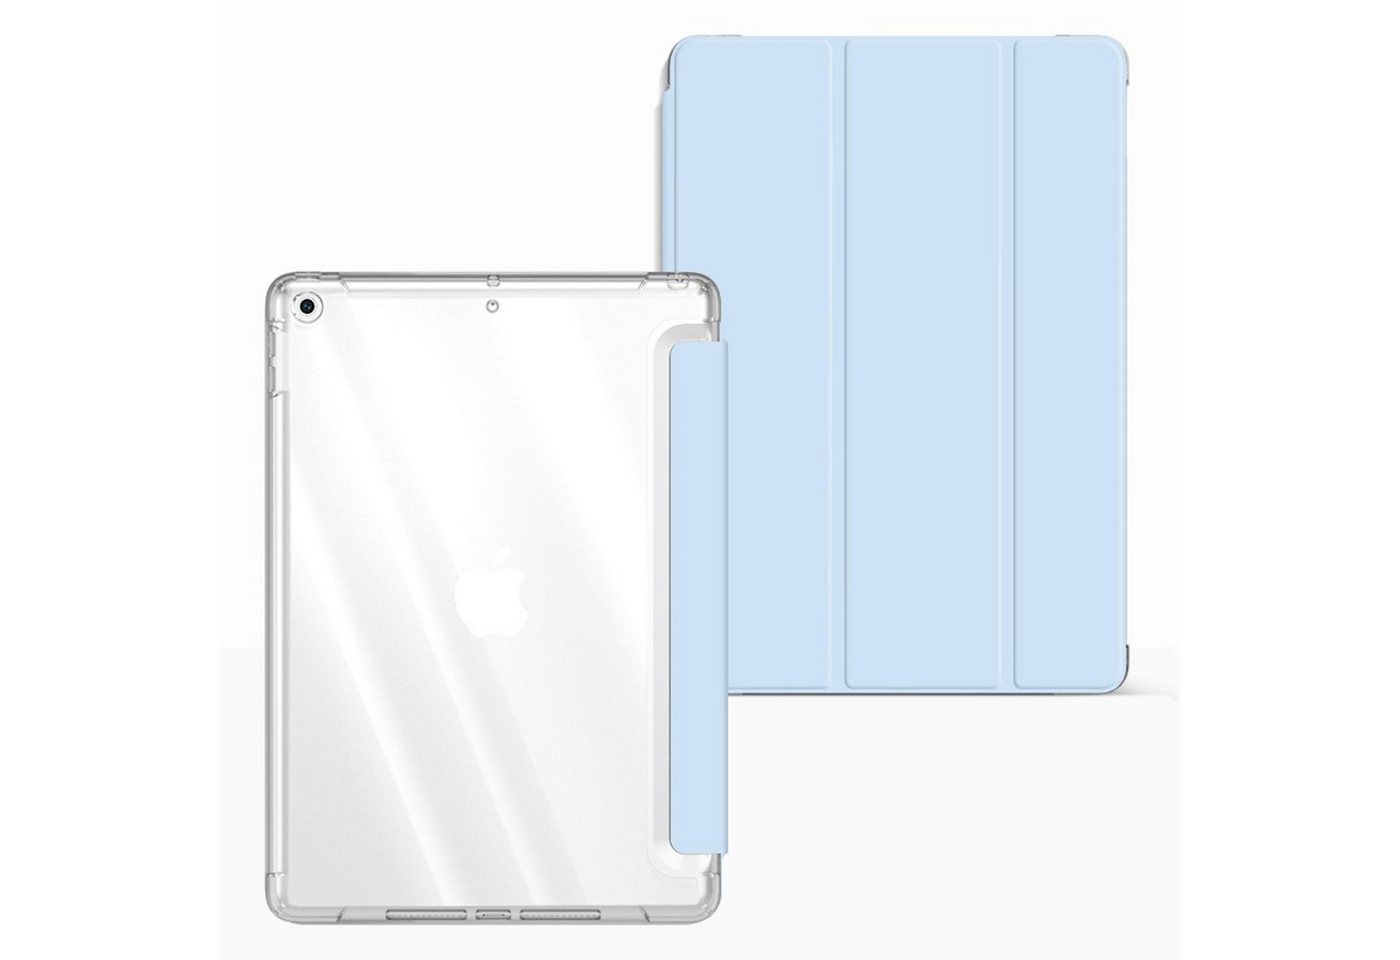 Numerva Tablet-Mappe Smart Cover Tablet Schutz Hülle für Apple iPad Air 2 (9.7 Zoll) 9.7 Zoll von Numerva